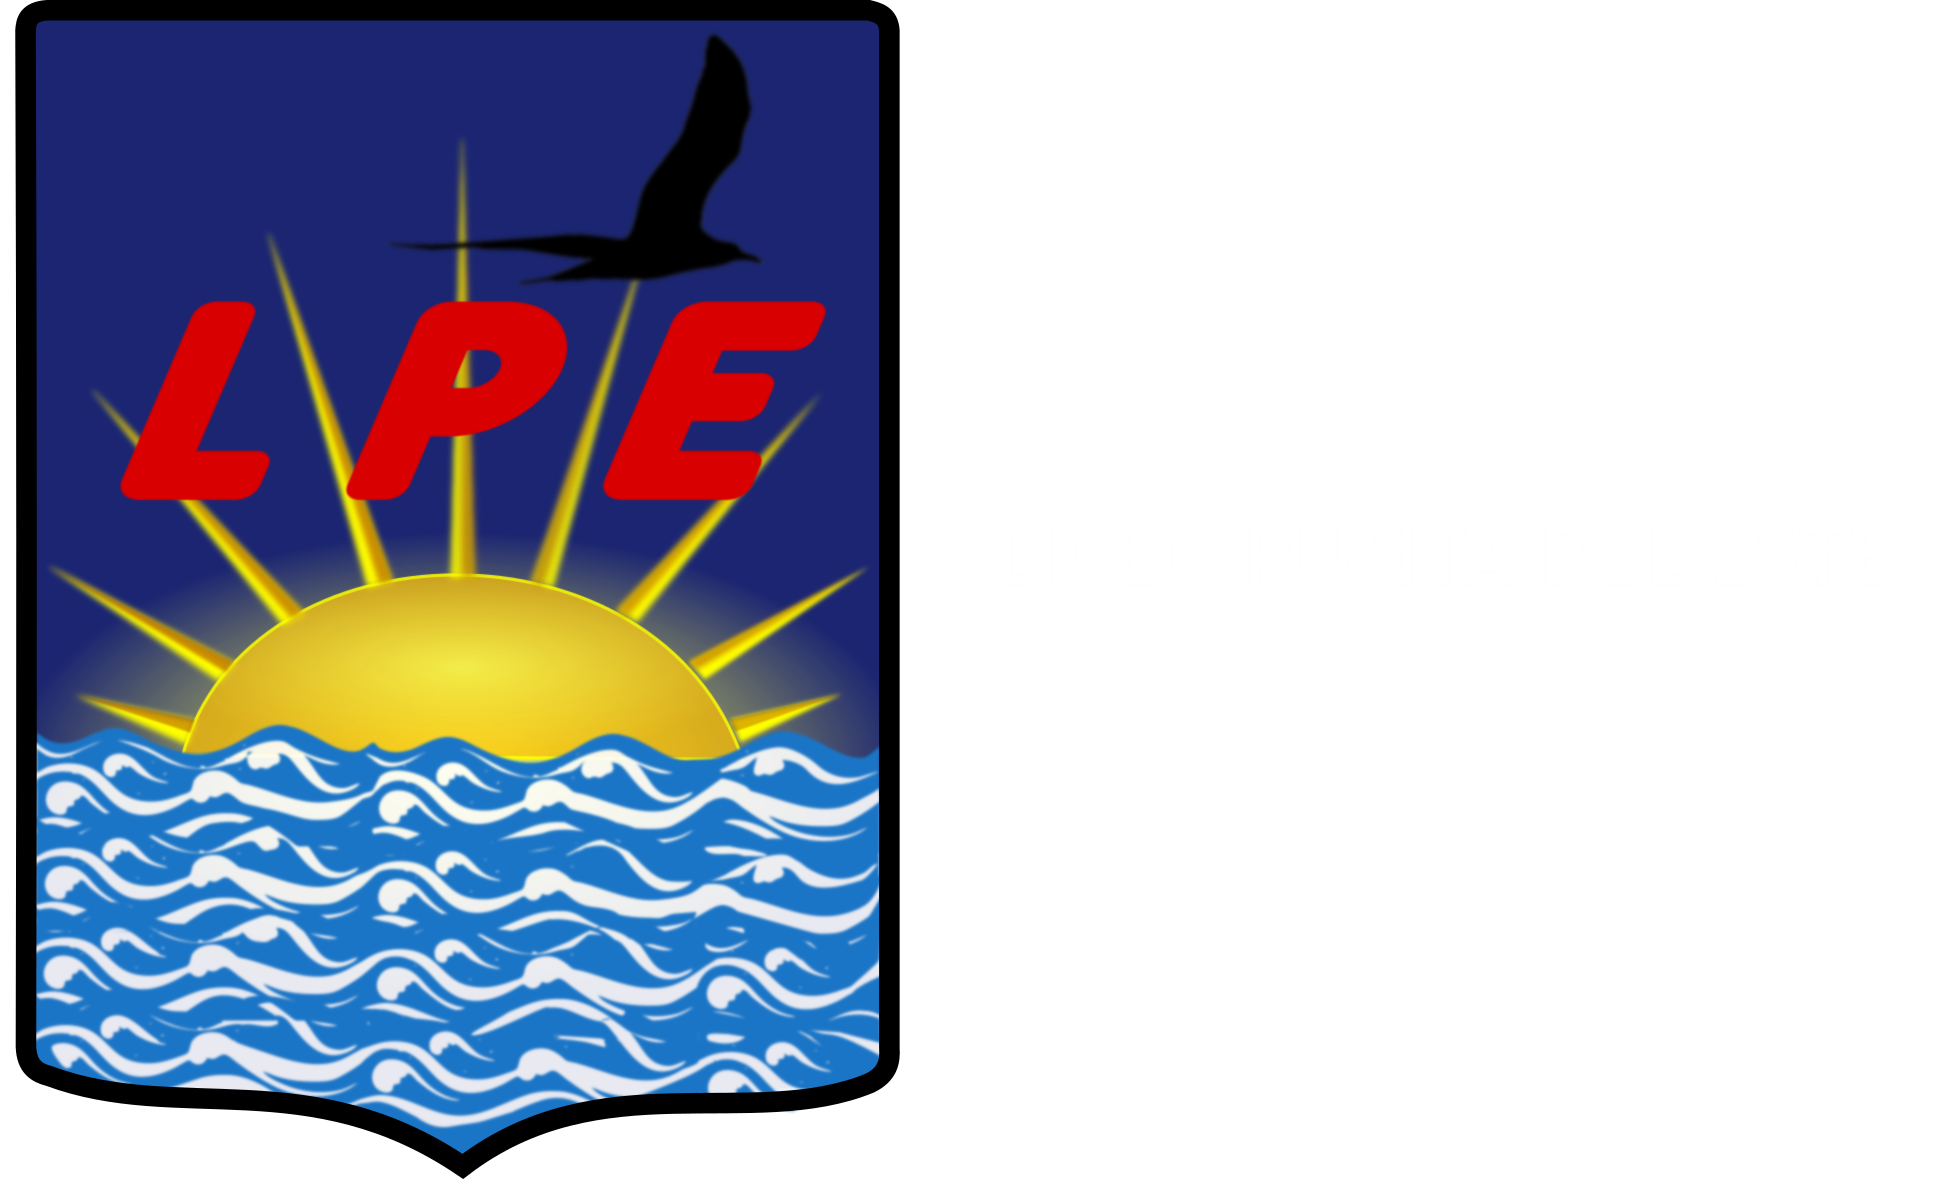 Liceo Punta del Este LOGO